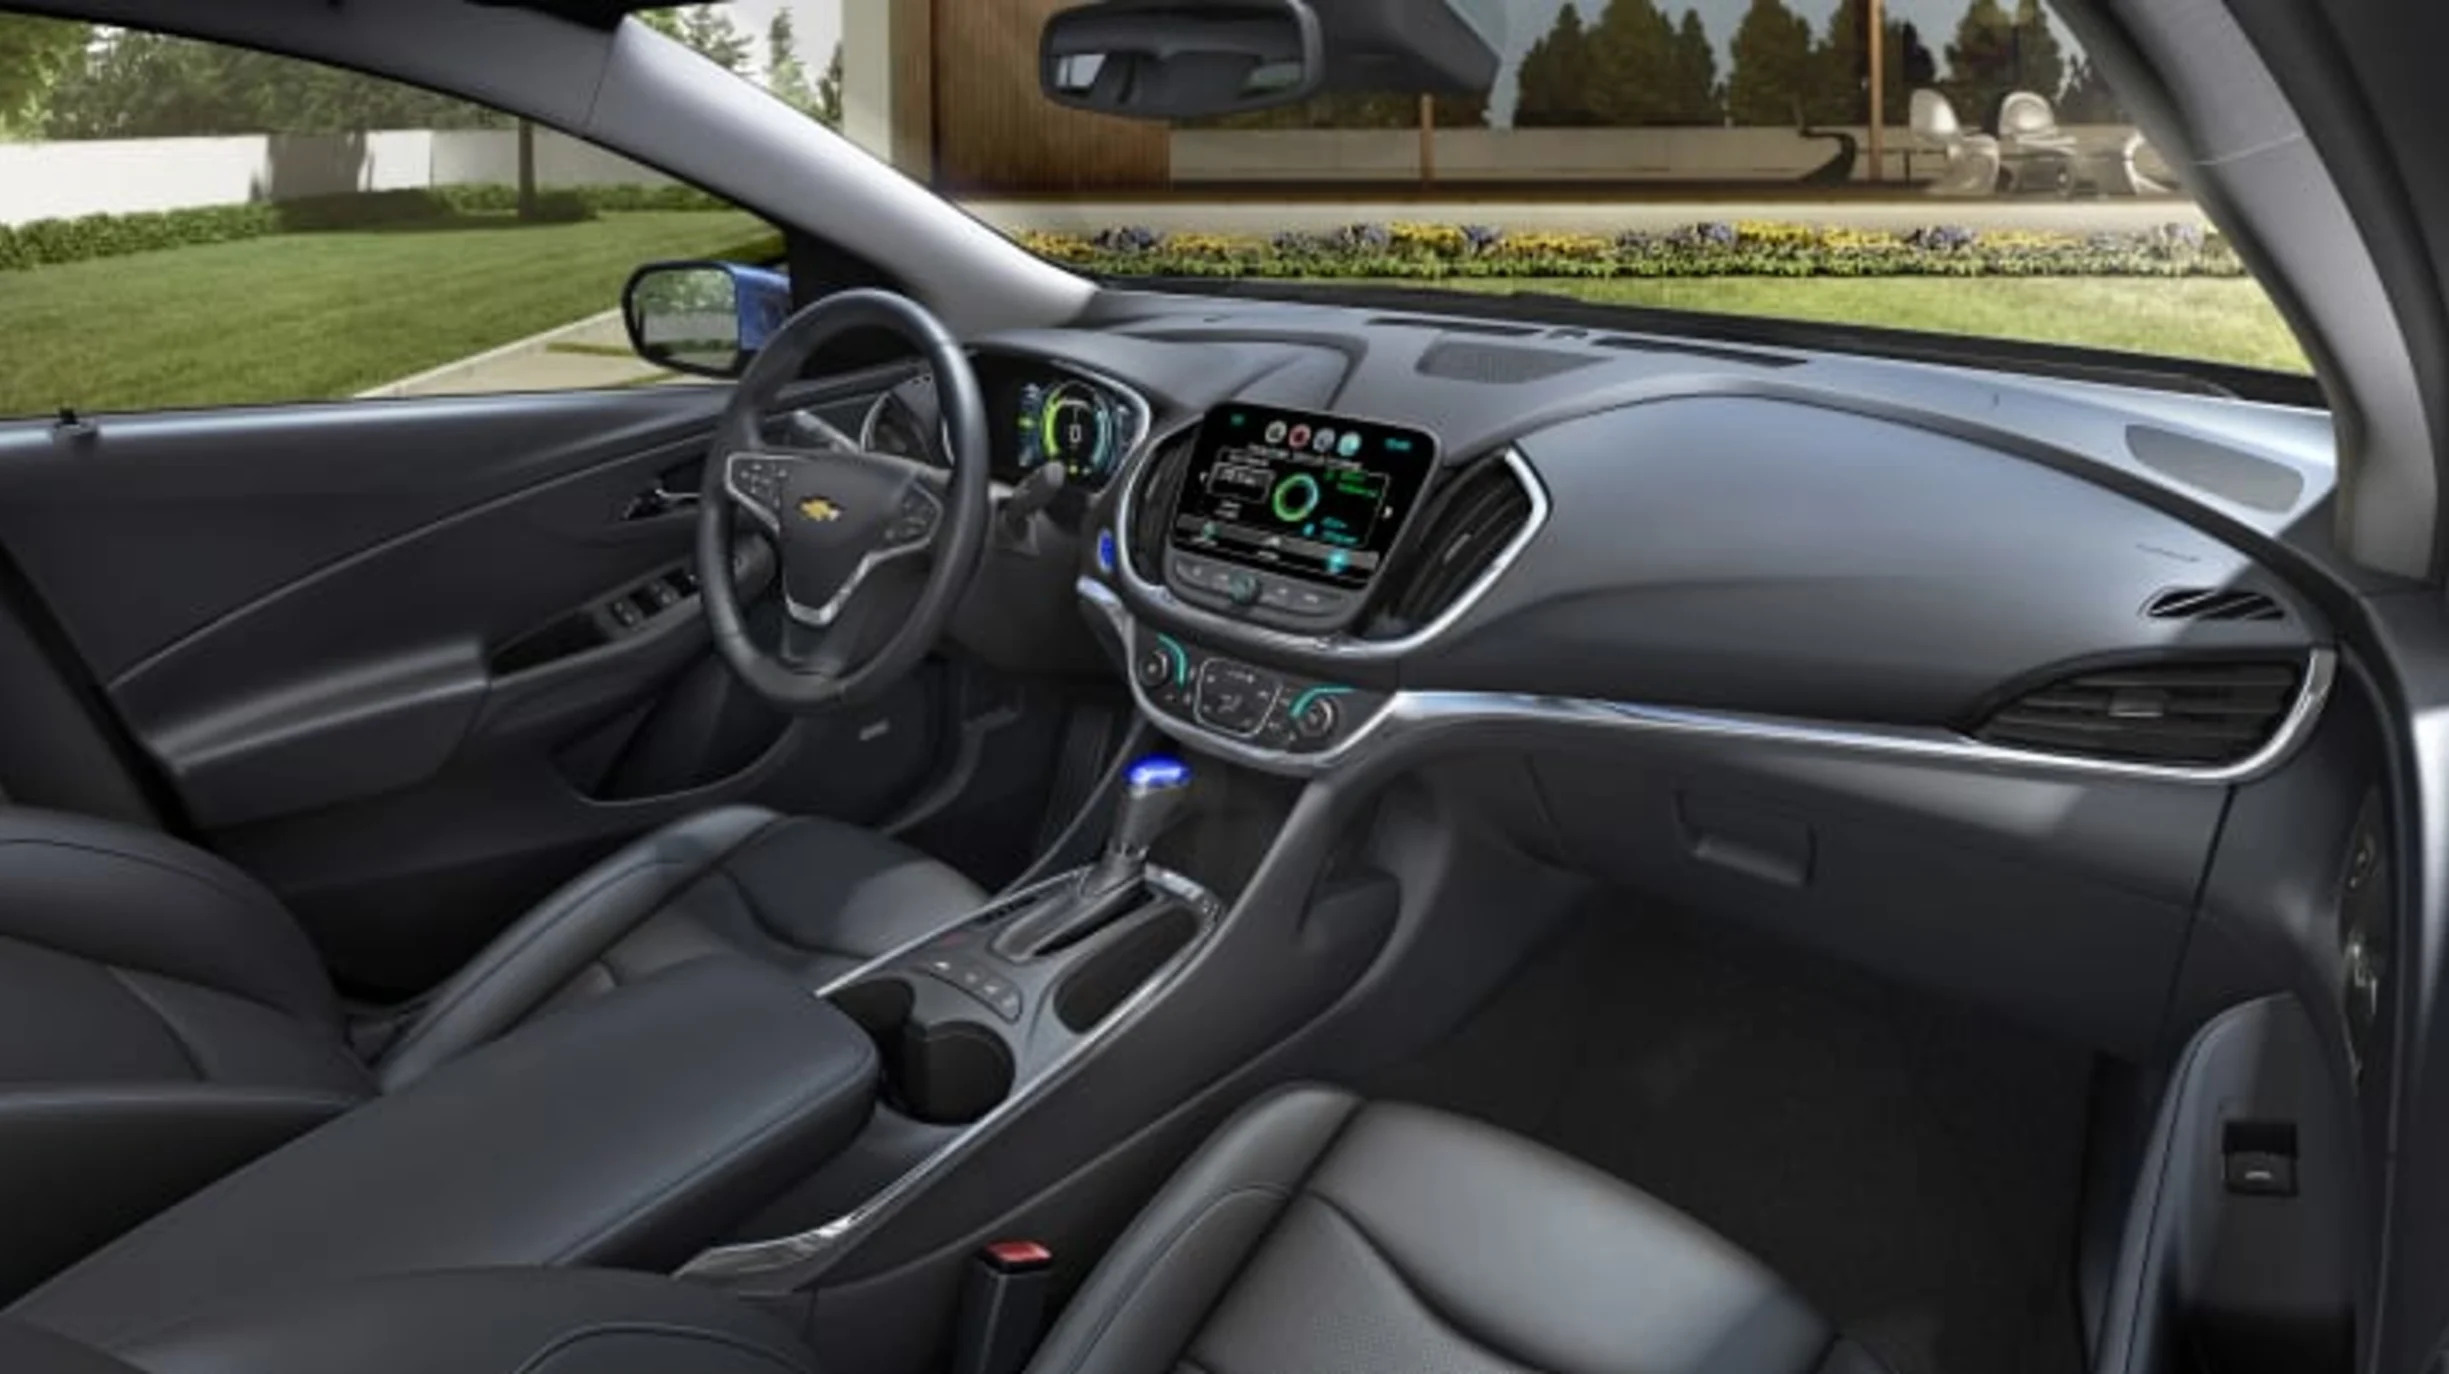 2016 Chevy Volt interior